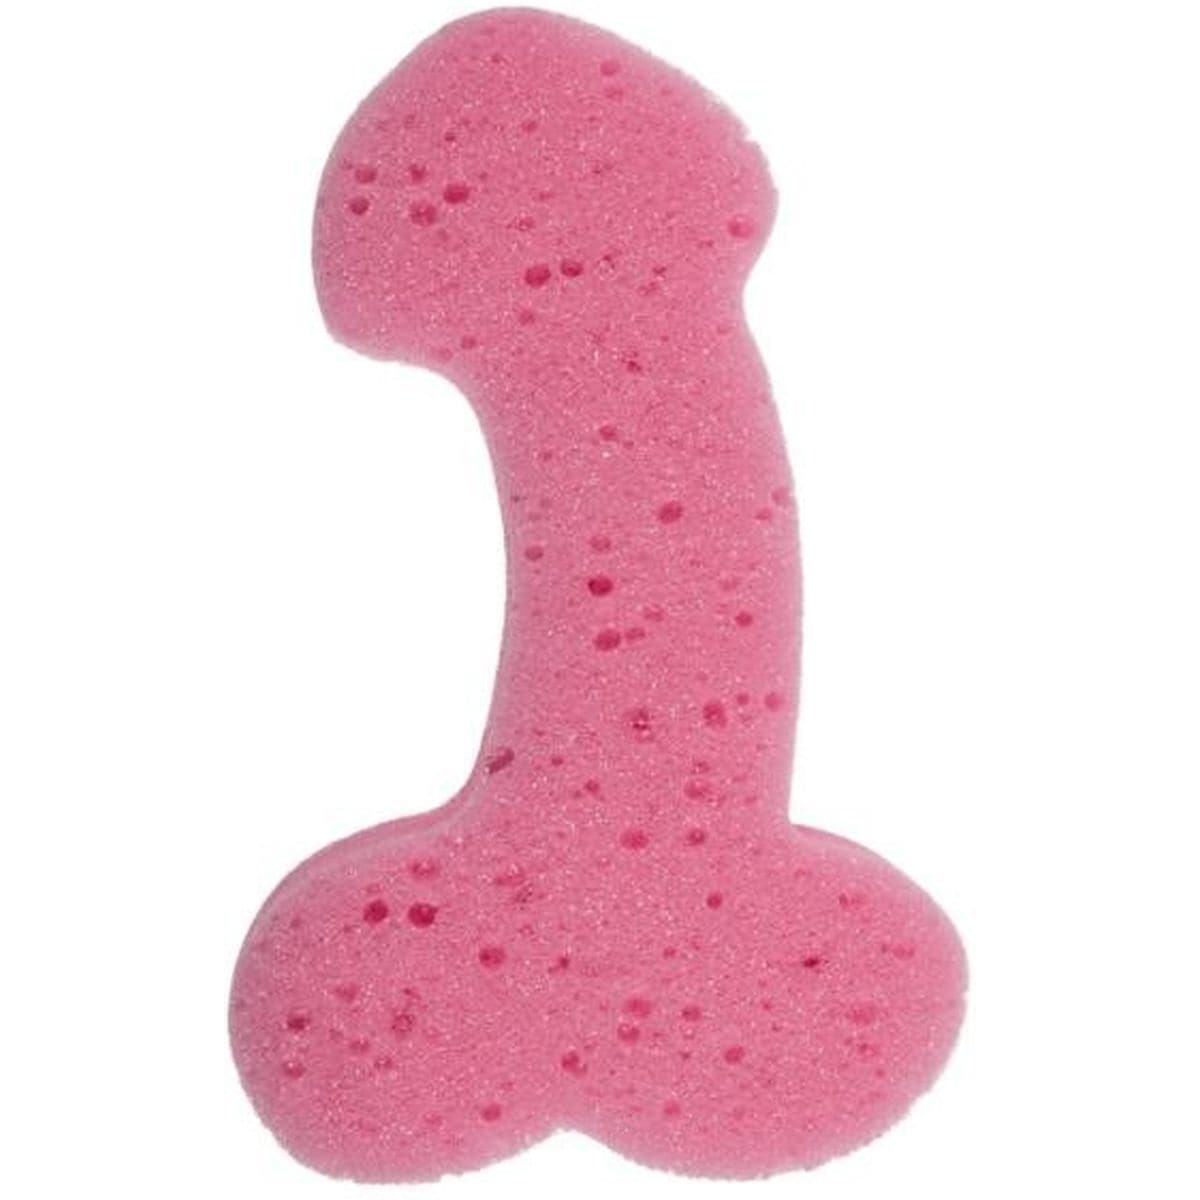 Esponja para o Banho com formato de Penis com 18.5cm - Pérola SexShop